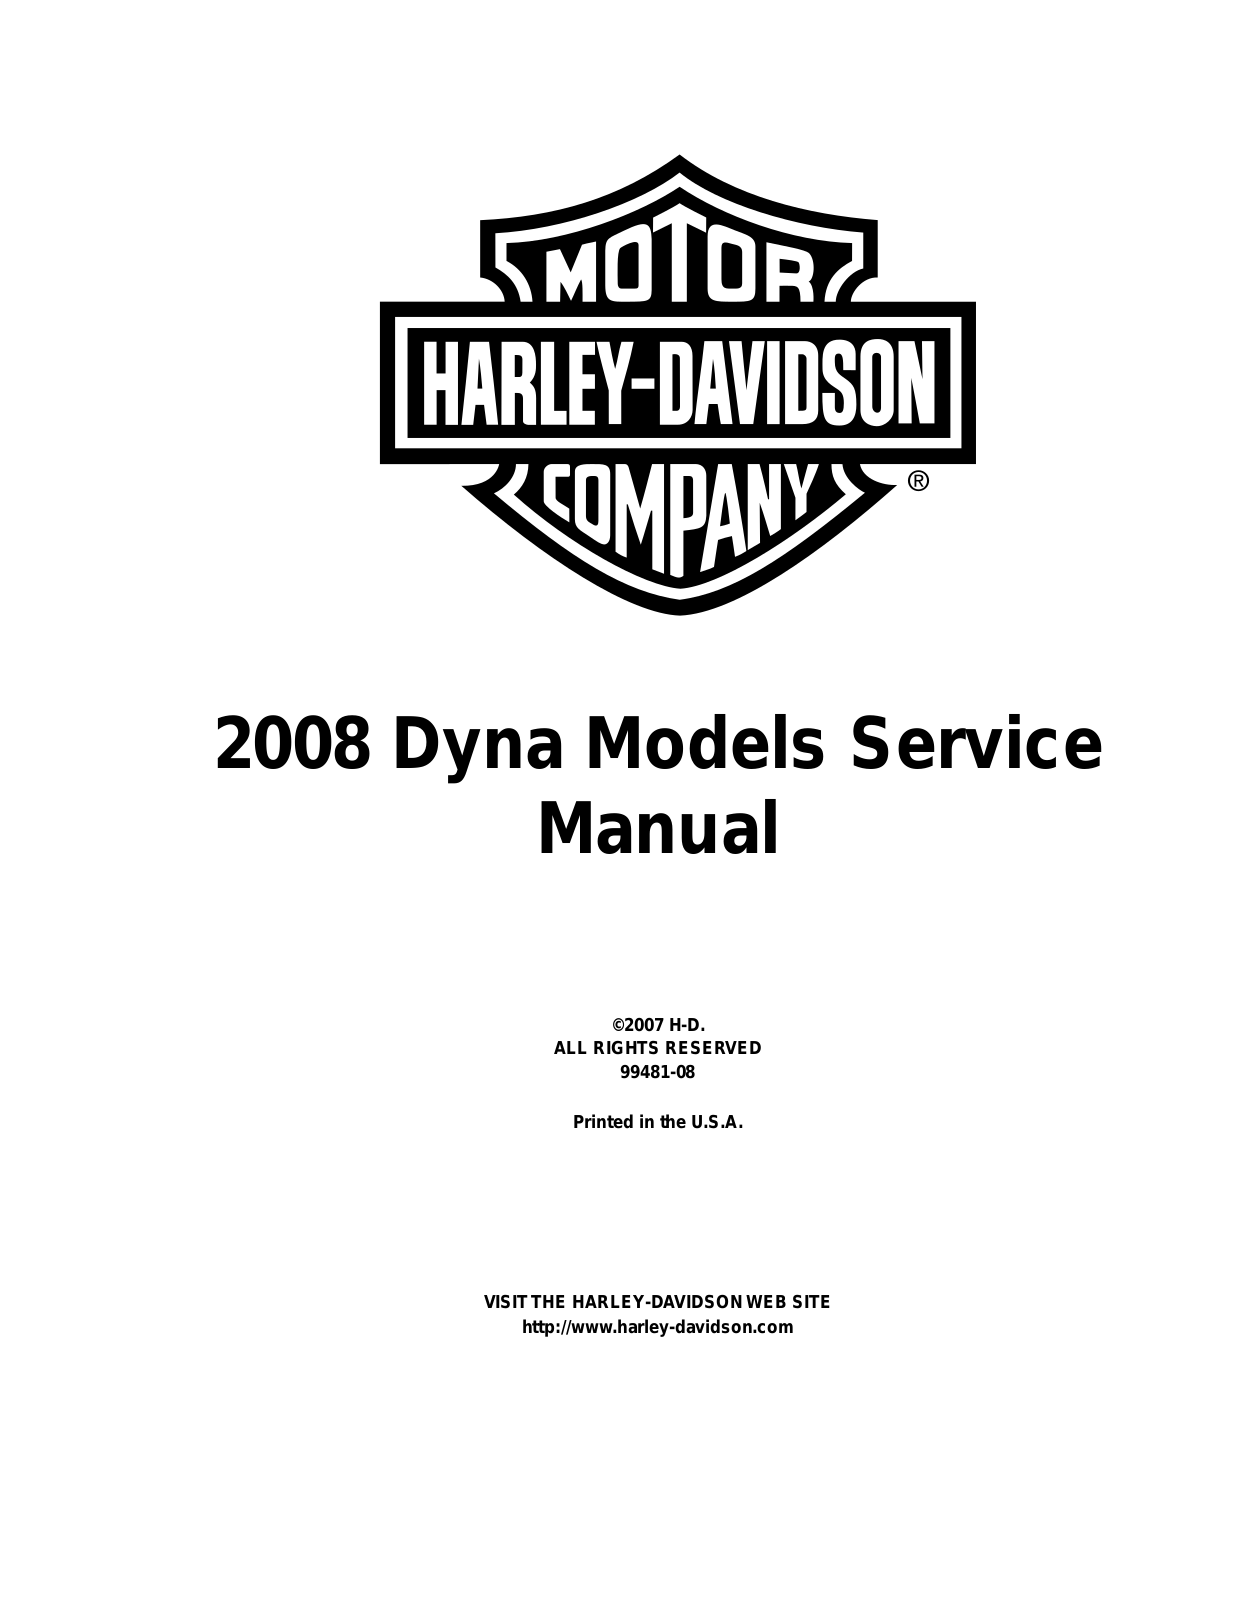 Harley Davidson dyna 2008 Service Manual